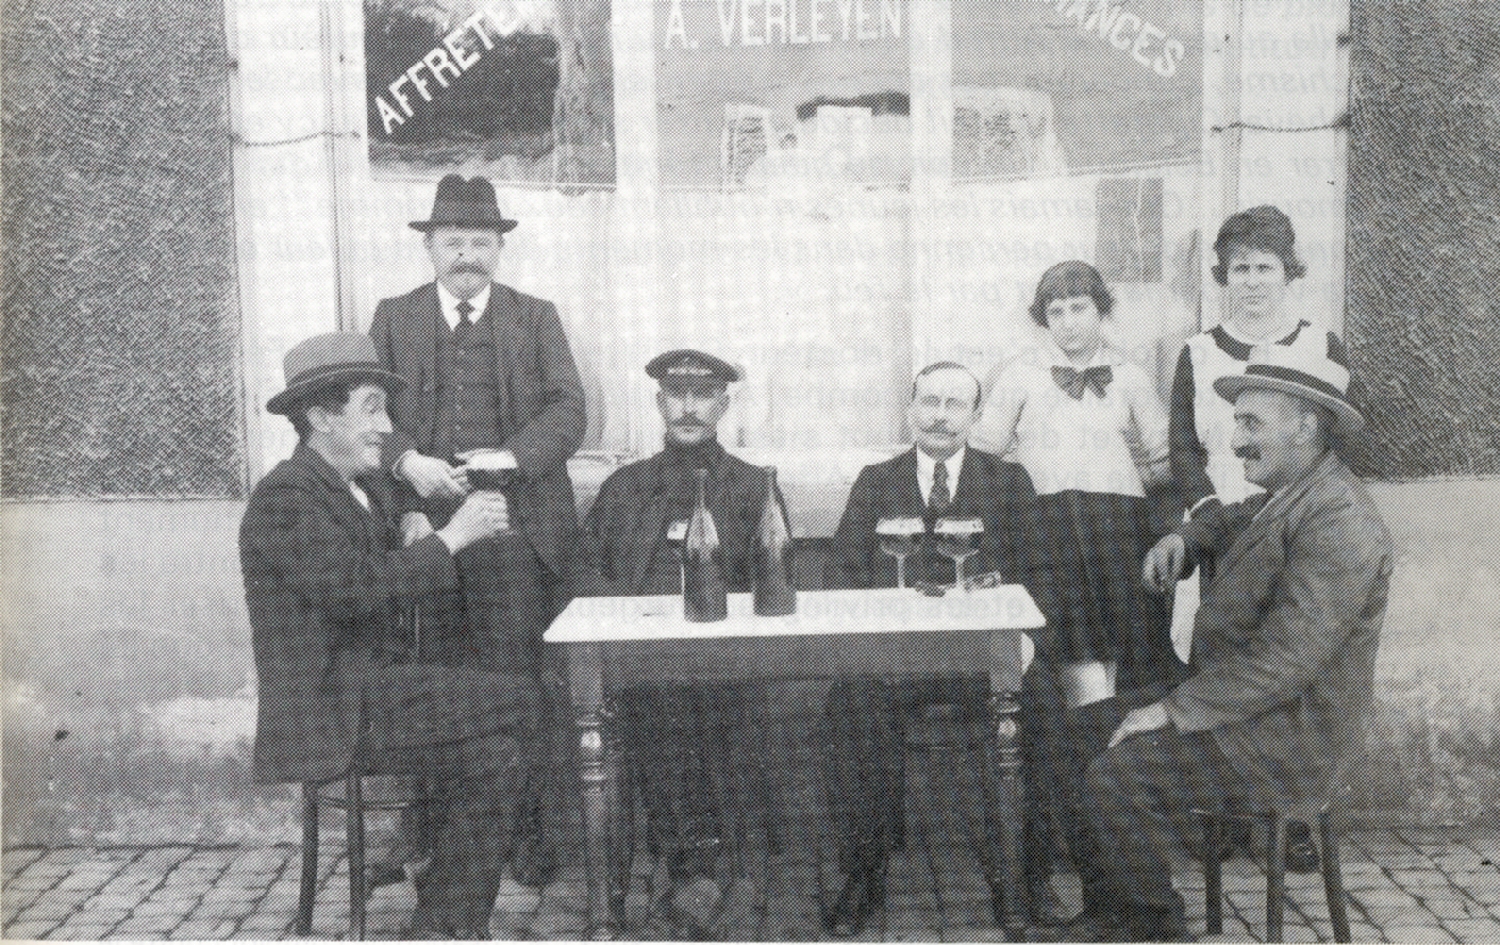 Saint-Ghislain : Café de la Marine à l'angle de la rue Léopold et de la rue du Port. Sur la table "L'Audernarde", une bière livrée par la brasserie de Baudour, plus connue sous le nom de "Canal attraction" (1923).